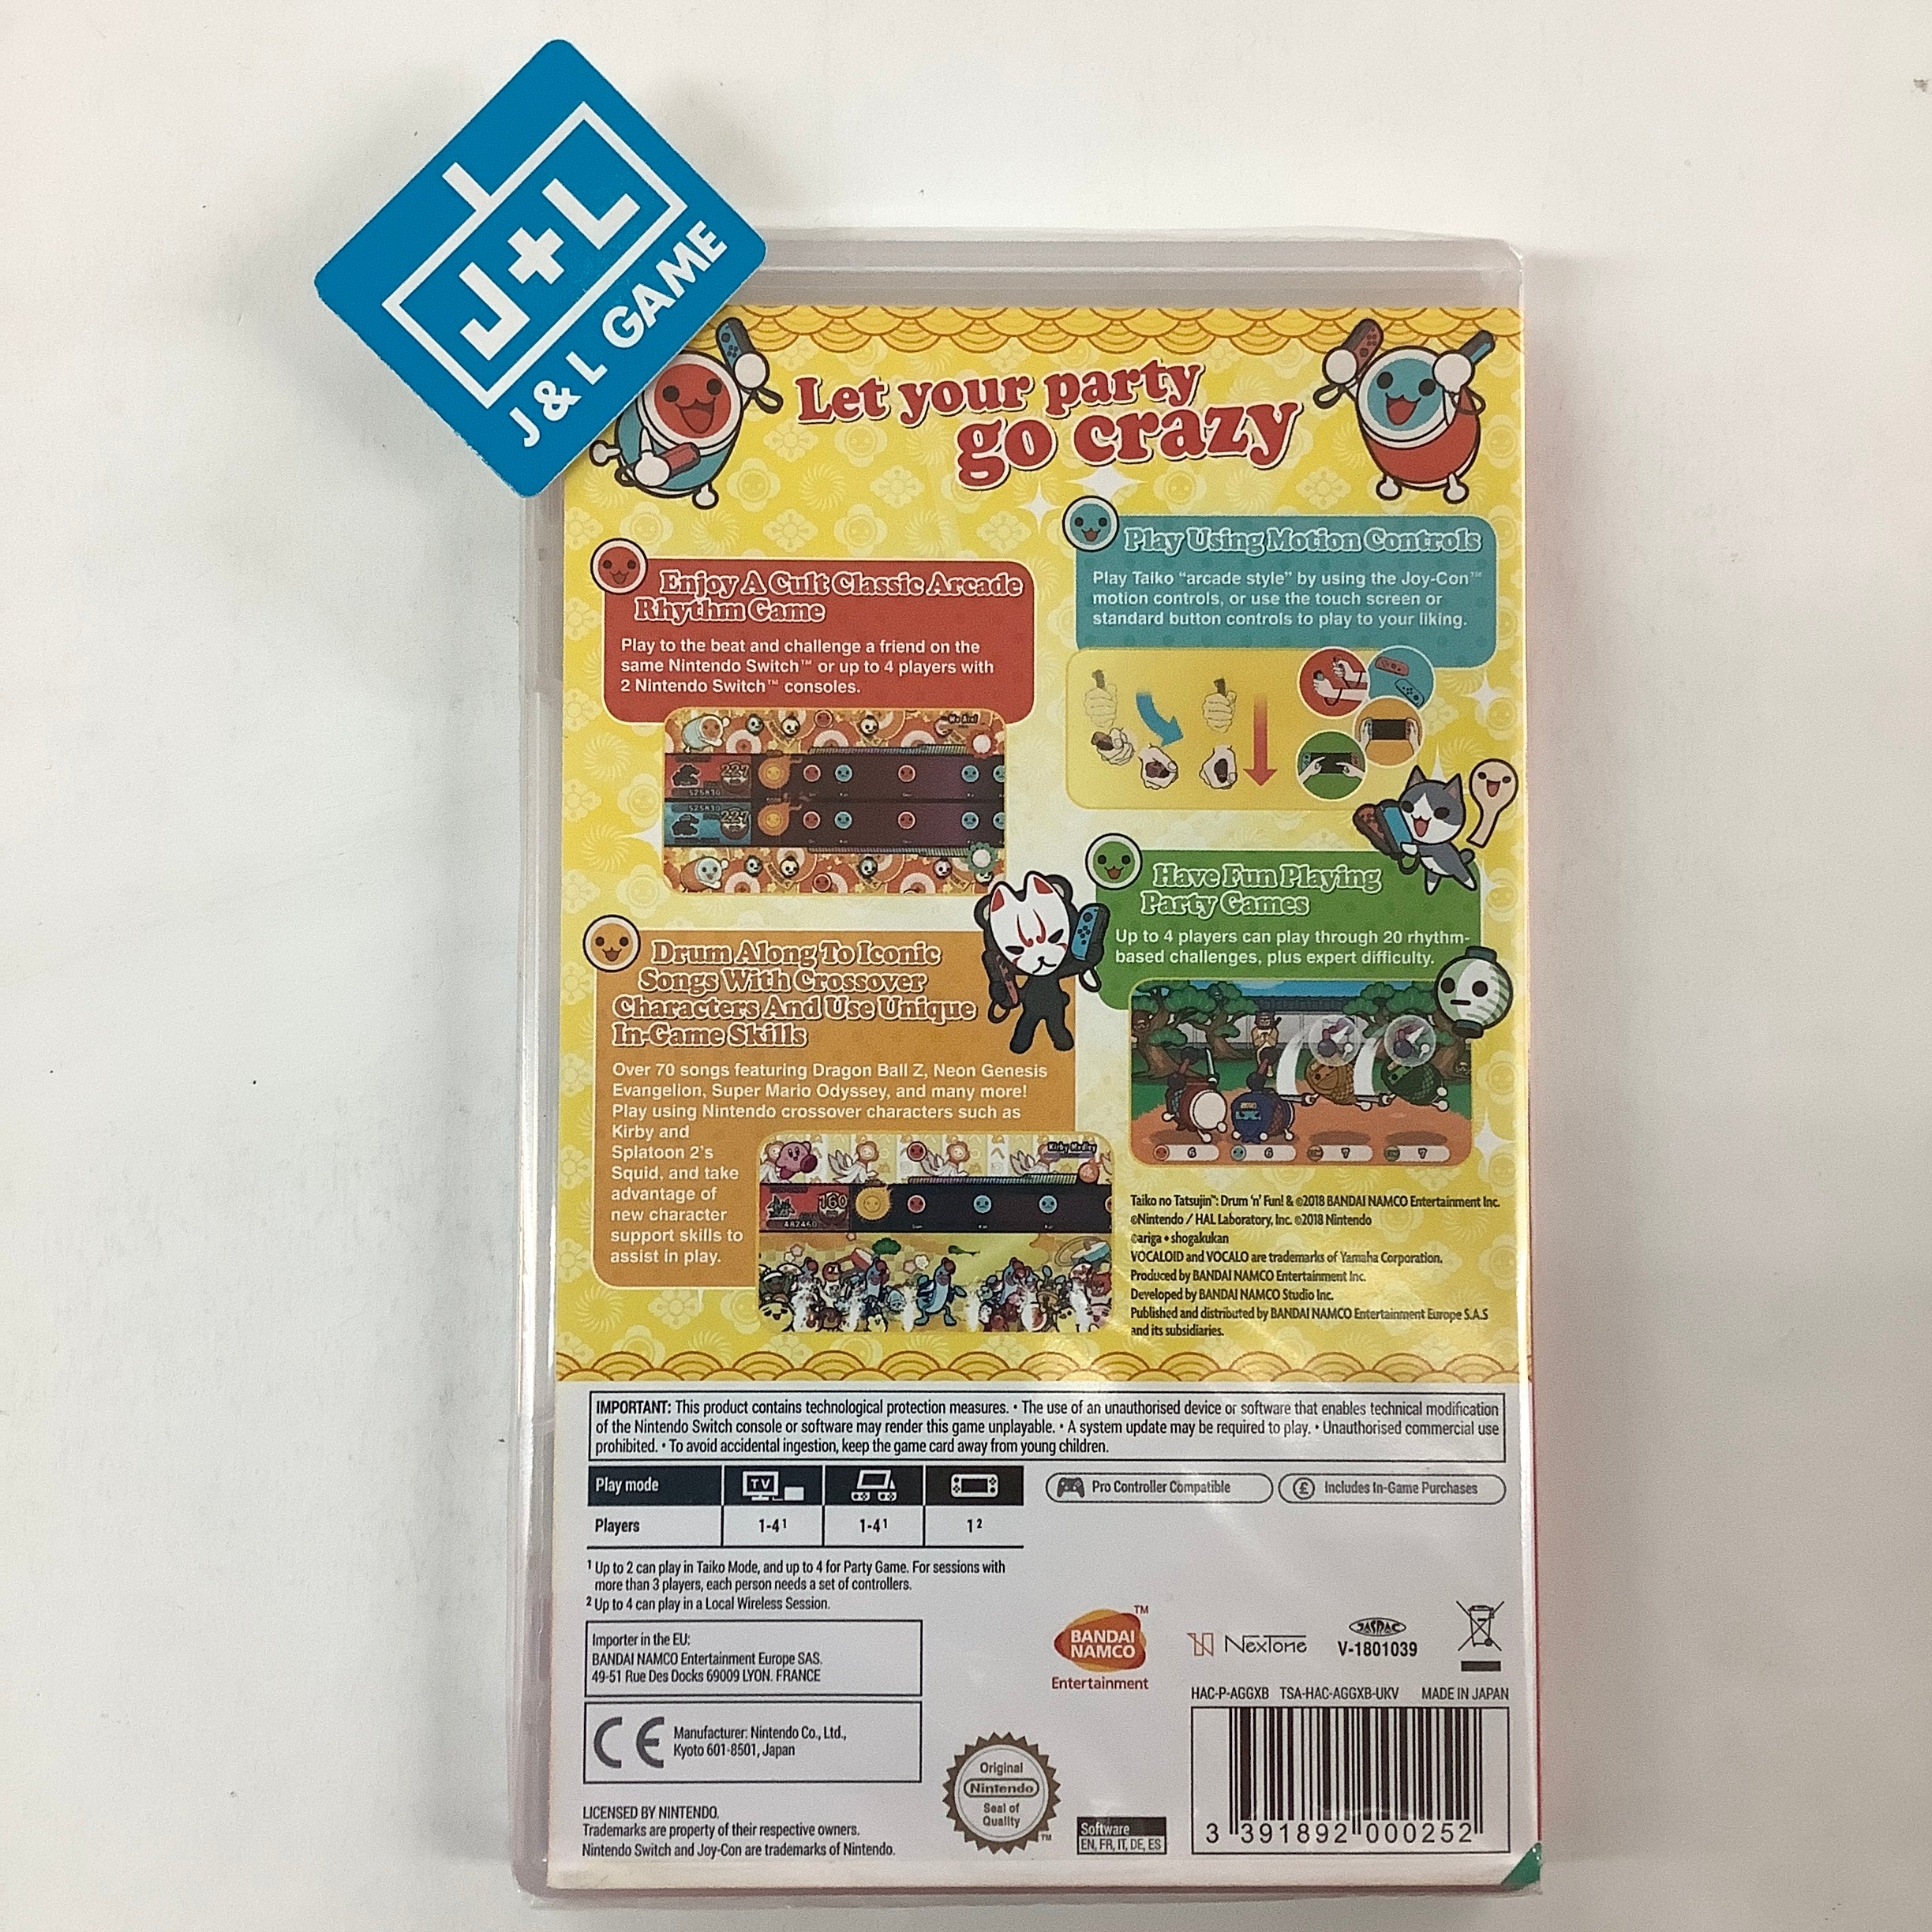 Taiko no Tatsujin: Drum 'n' Fun! - (NSW) Nintendo Switch (European Import) Video Games Namco Bandai   